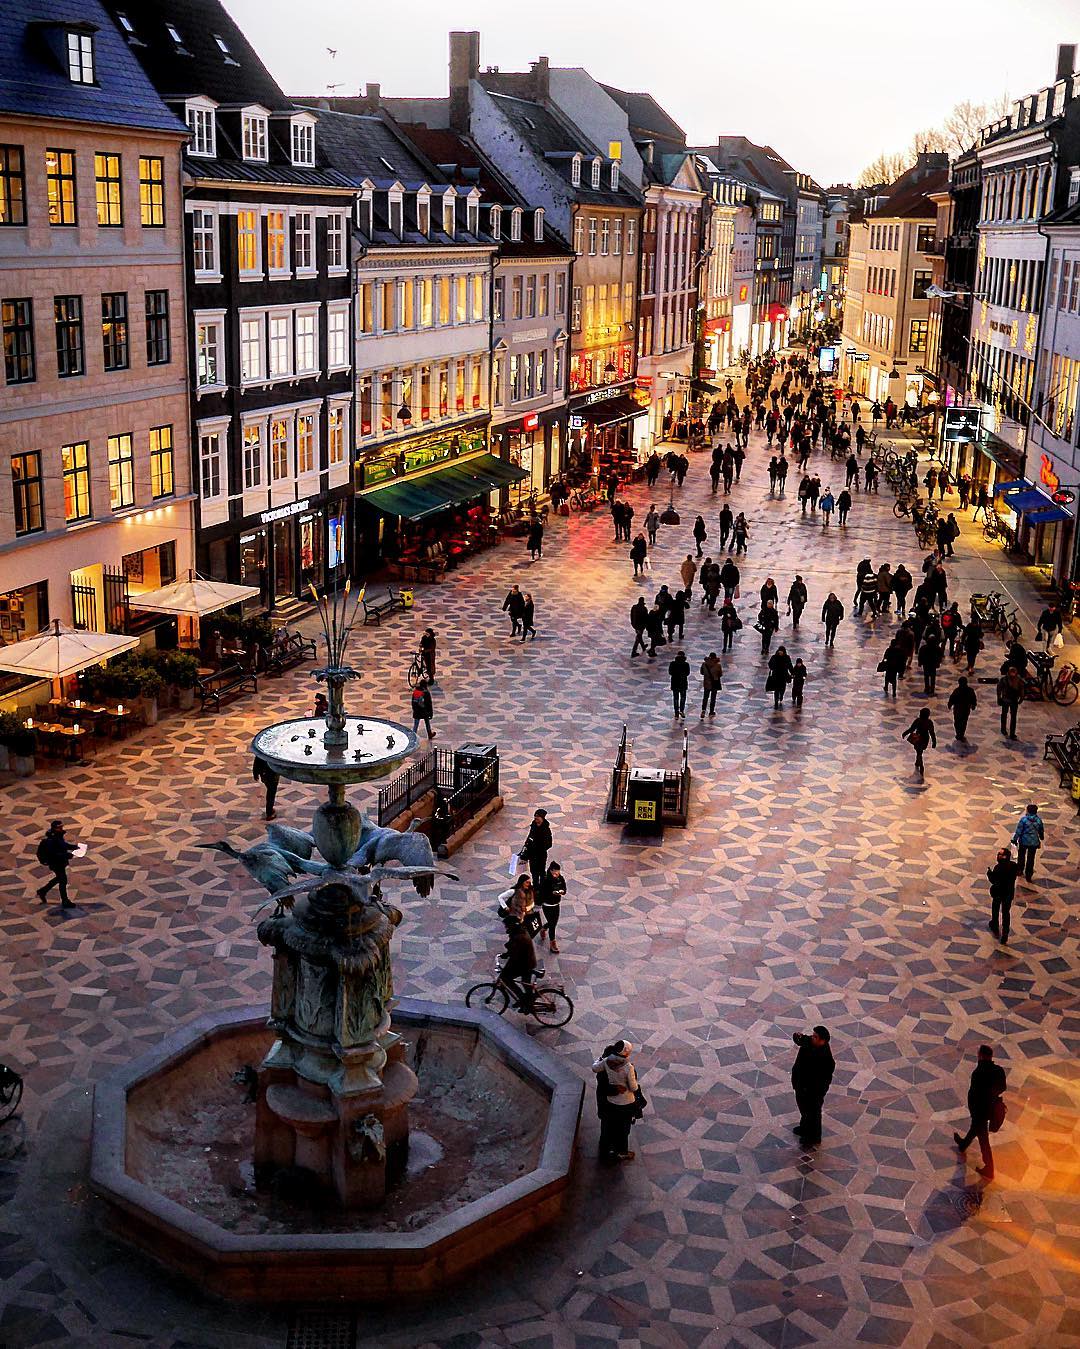 nyheder Forøge Tilbud VisitDenmark on Twitter: "Strøget, Copenhagen's pretty pedestrian #shopping  street by https://t.co/kprUomxNNM #visitdenmark #copenhagen #strøget  #denmark #street https://t.co/rZOyOdZ6Om" / Twitter